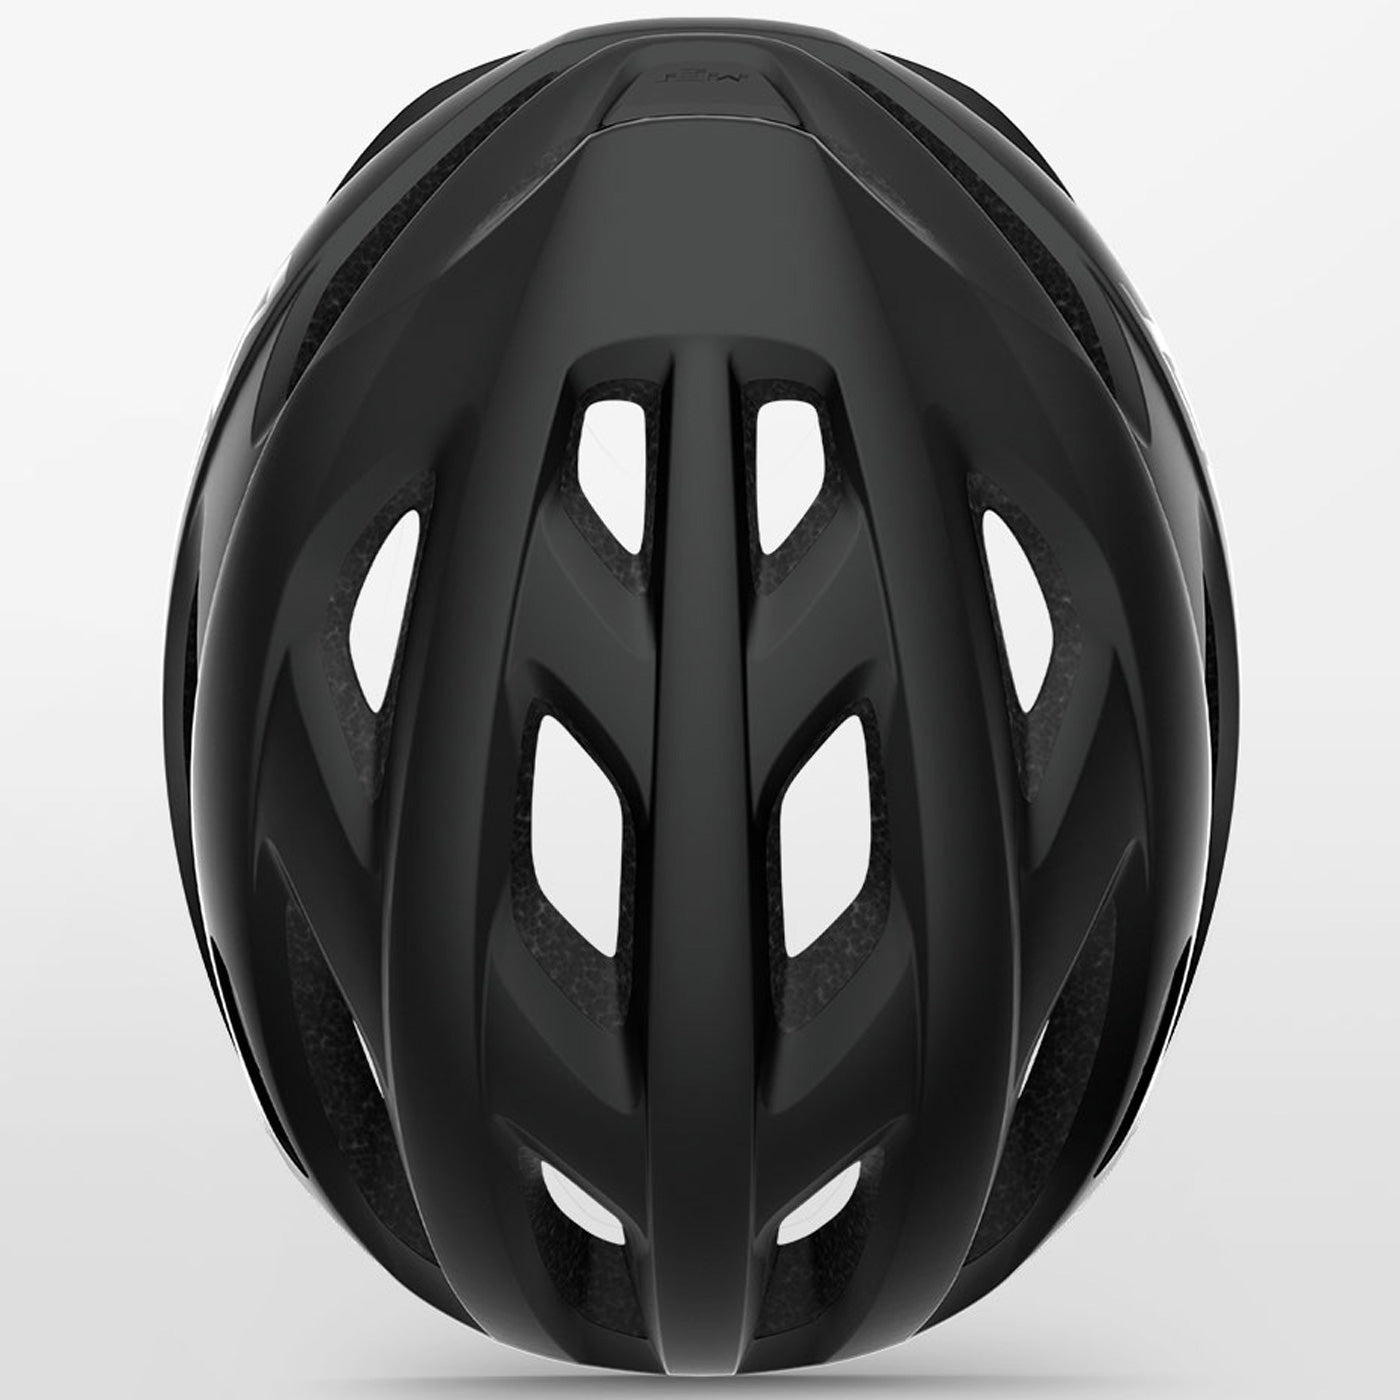 Met Idolo Mips helmet - Black | All4cycling